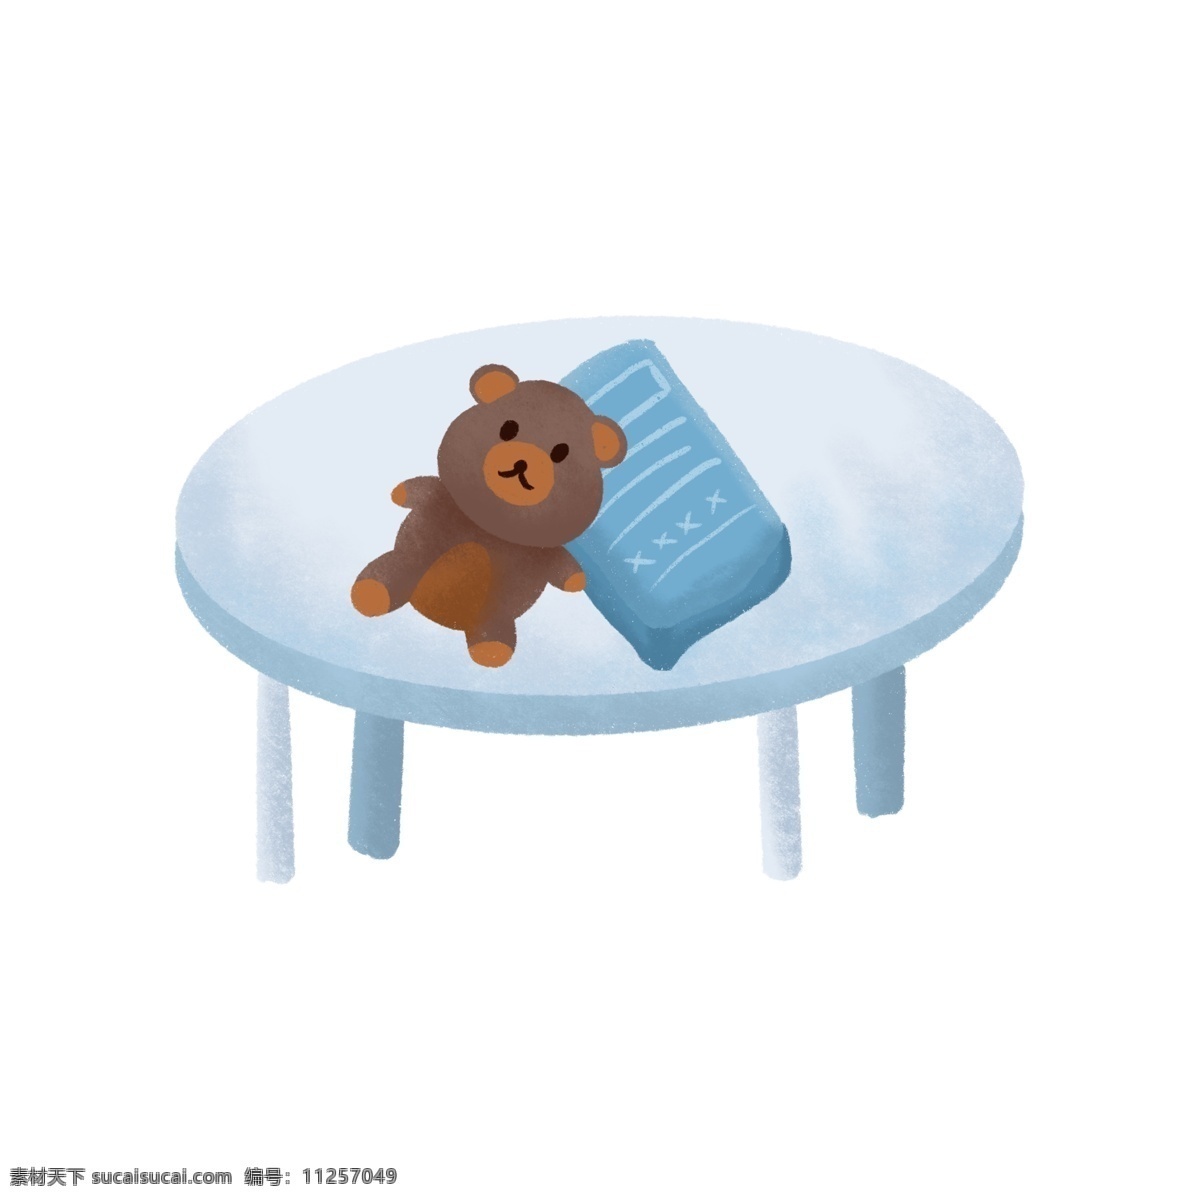 桌子 上 褐色 小 熊 元素 桌子上 小熊